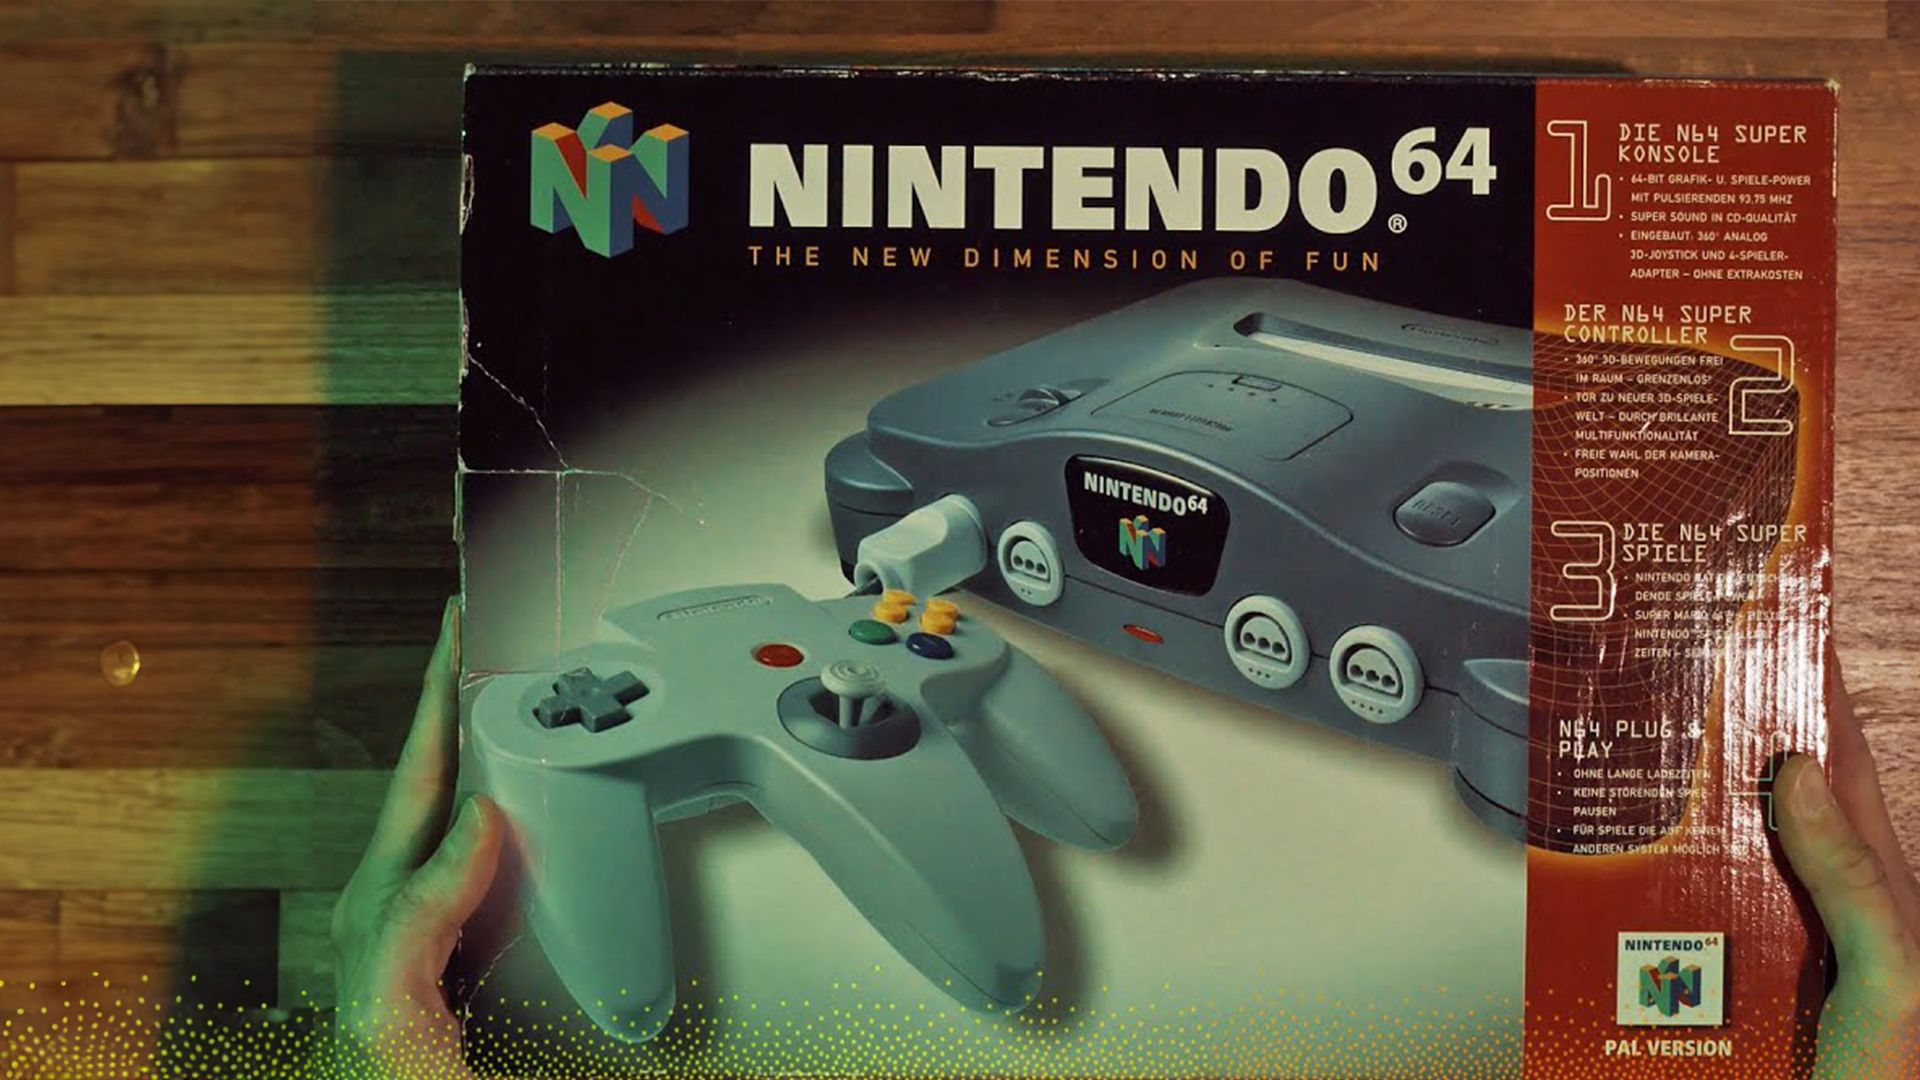 Das ORIGINAL Nintendo 64 ausgepackt | Good Old Times